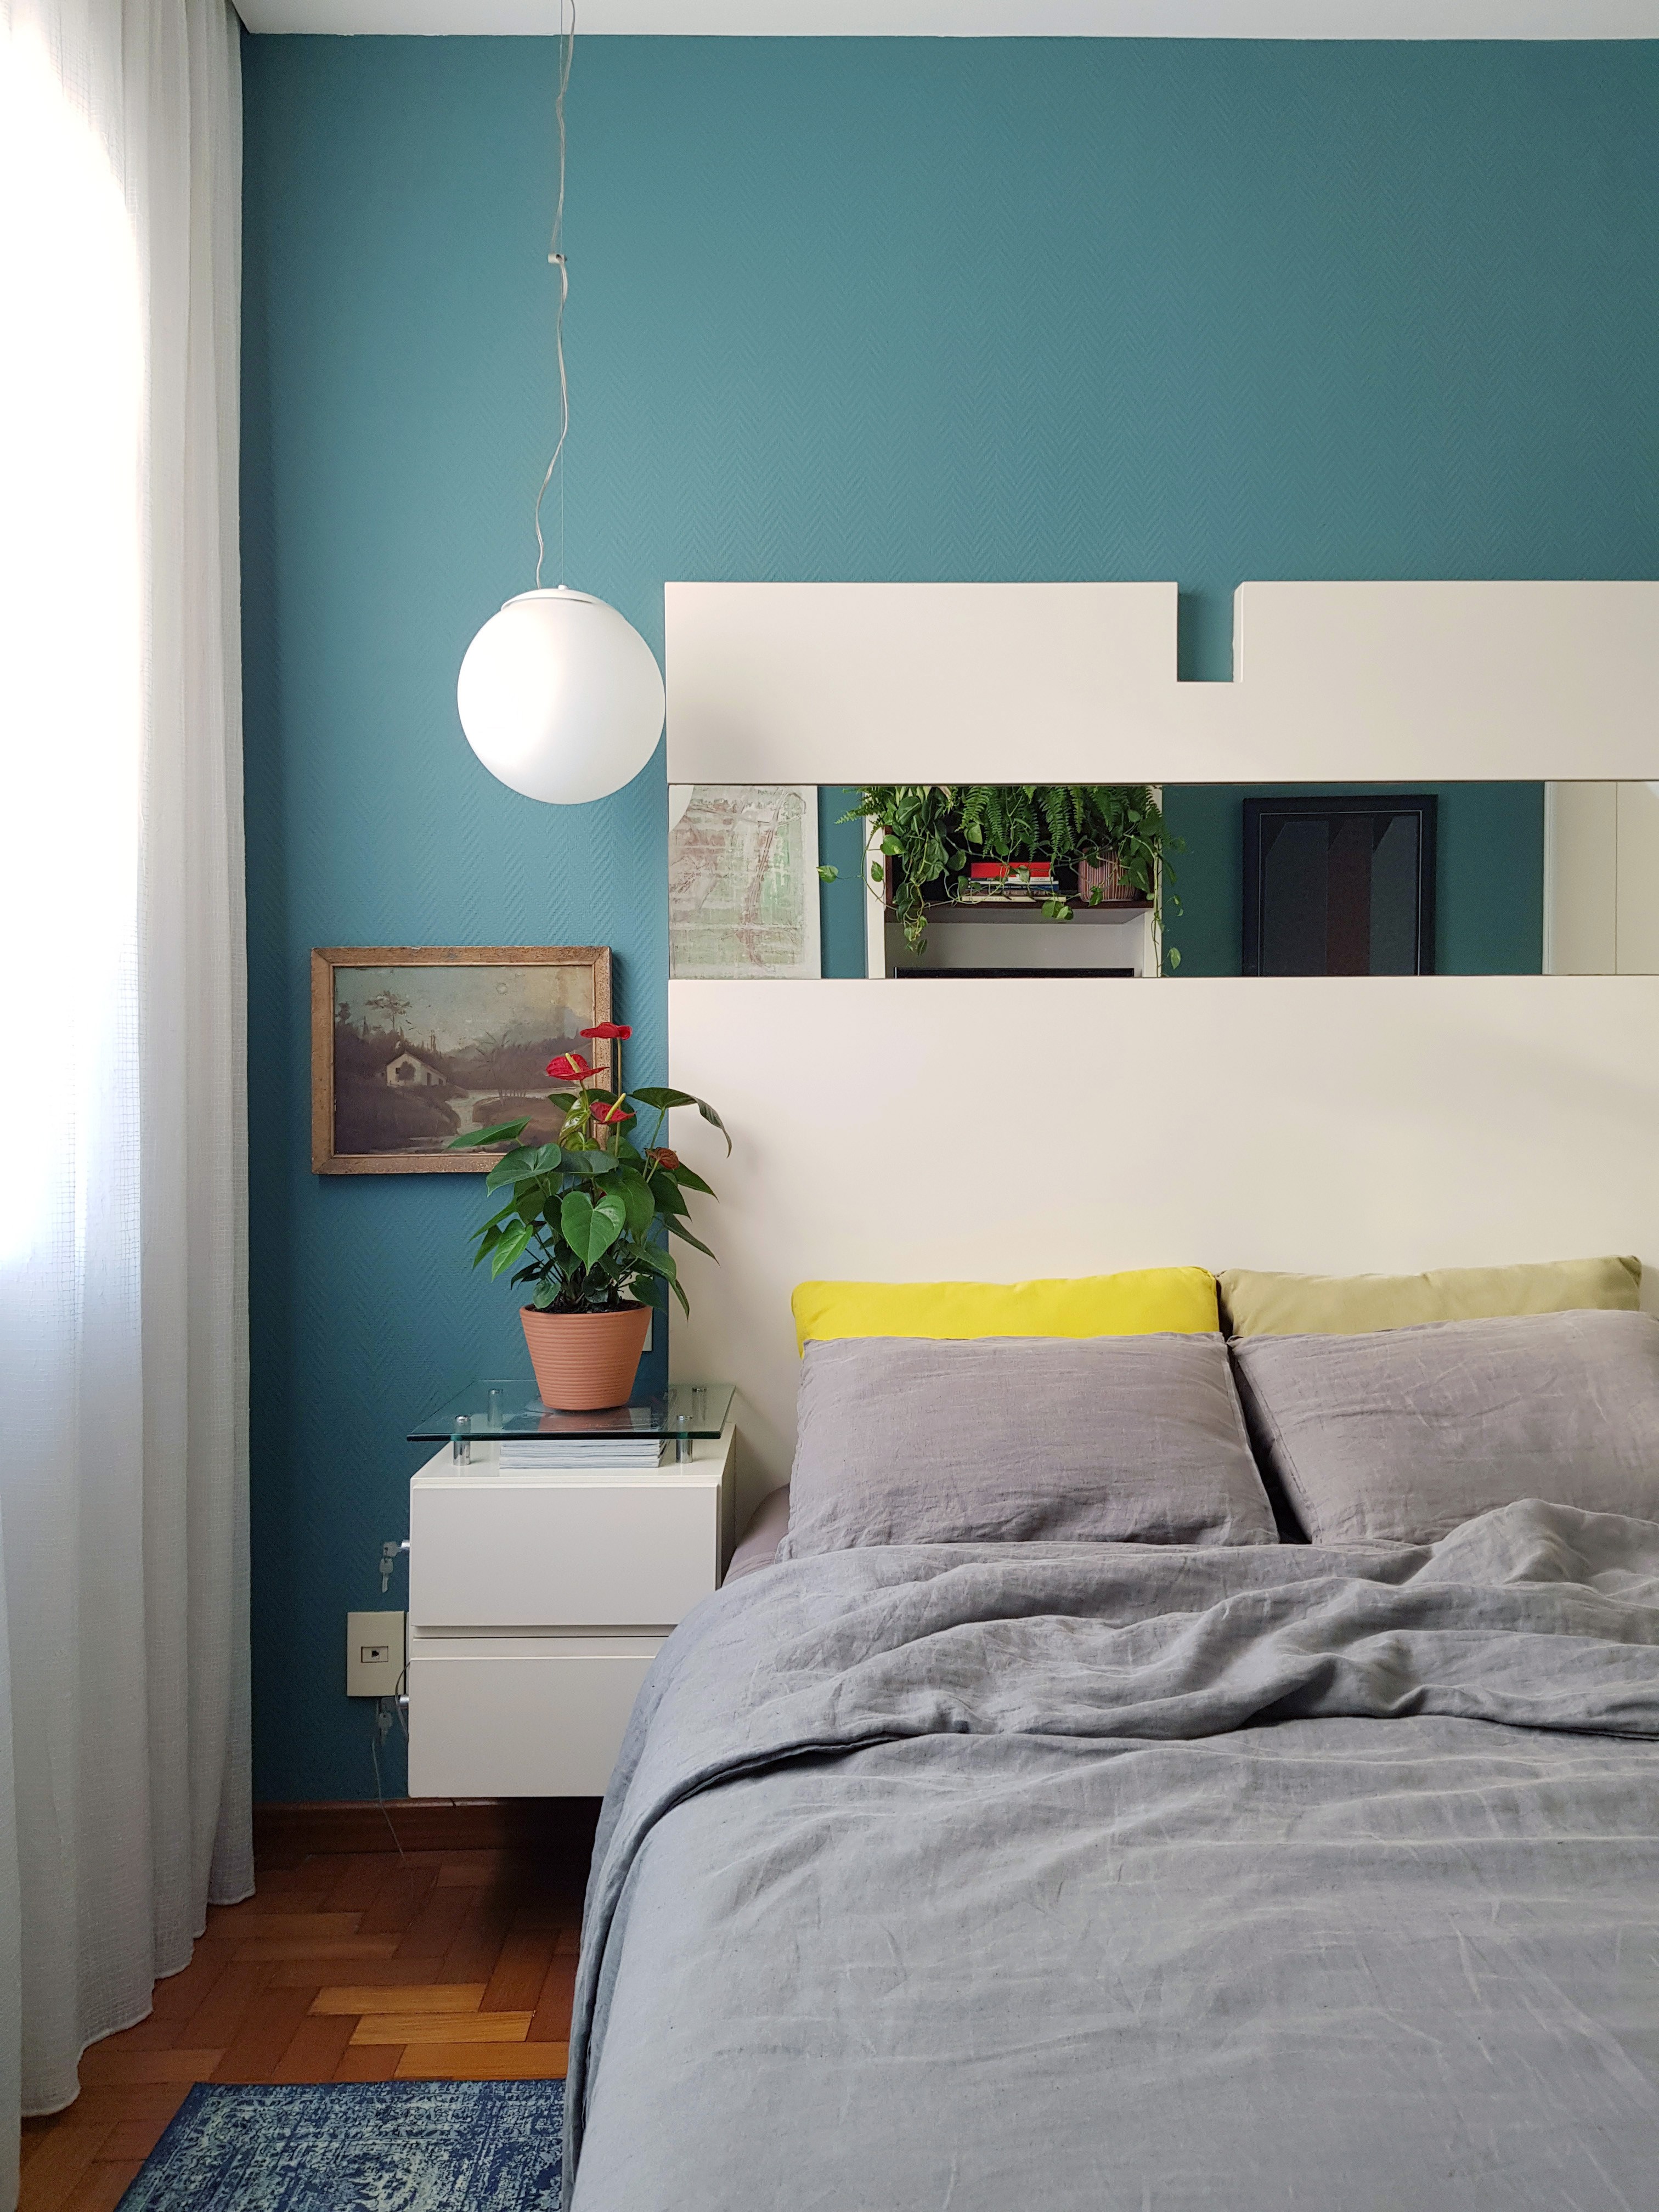 No quarto, o uso de cores vivas e plantas se repete (Foto: Marcelo Guidine / Divulgação)